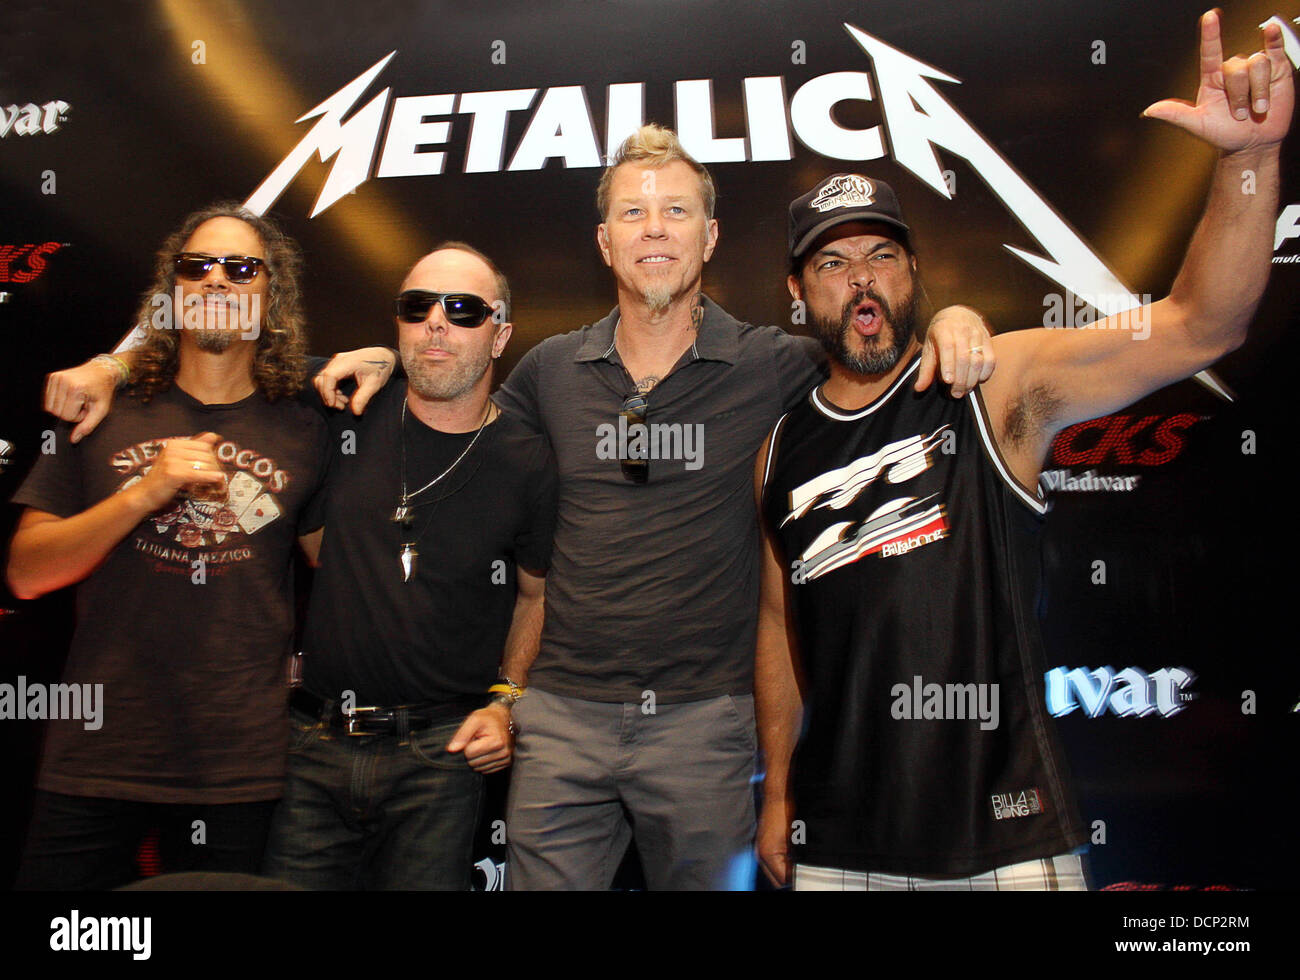 Metallica лучшие песни. Группа Metallica. Группа металлика сейчас. Металлика состав группы. Металлика фото группы.